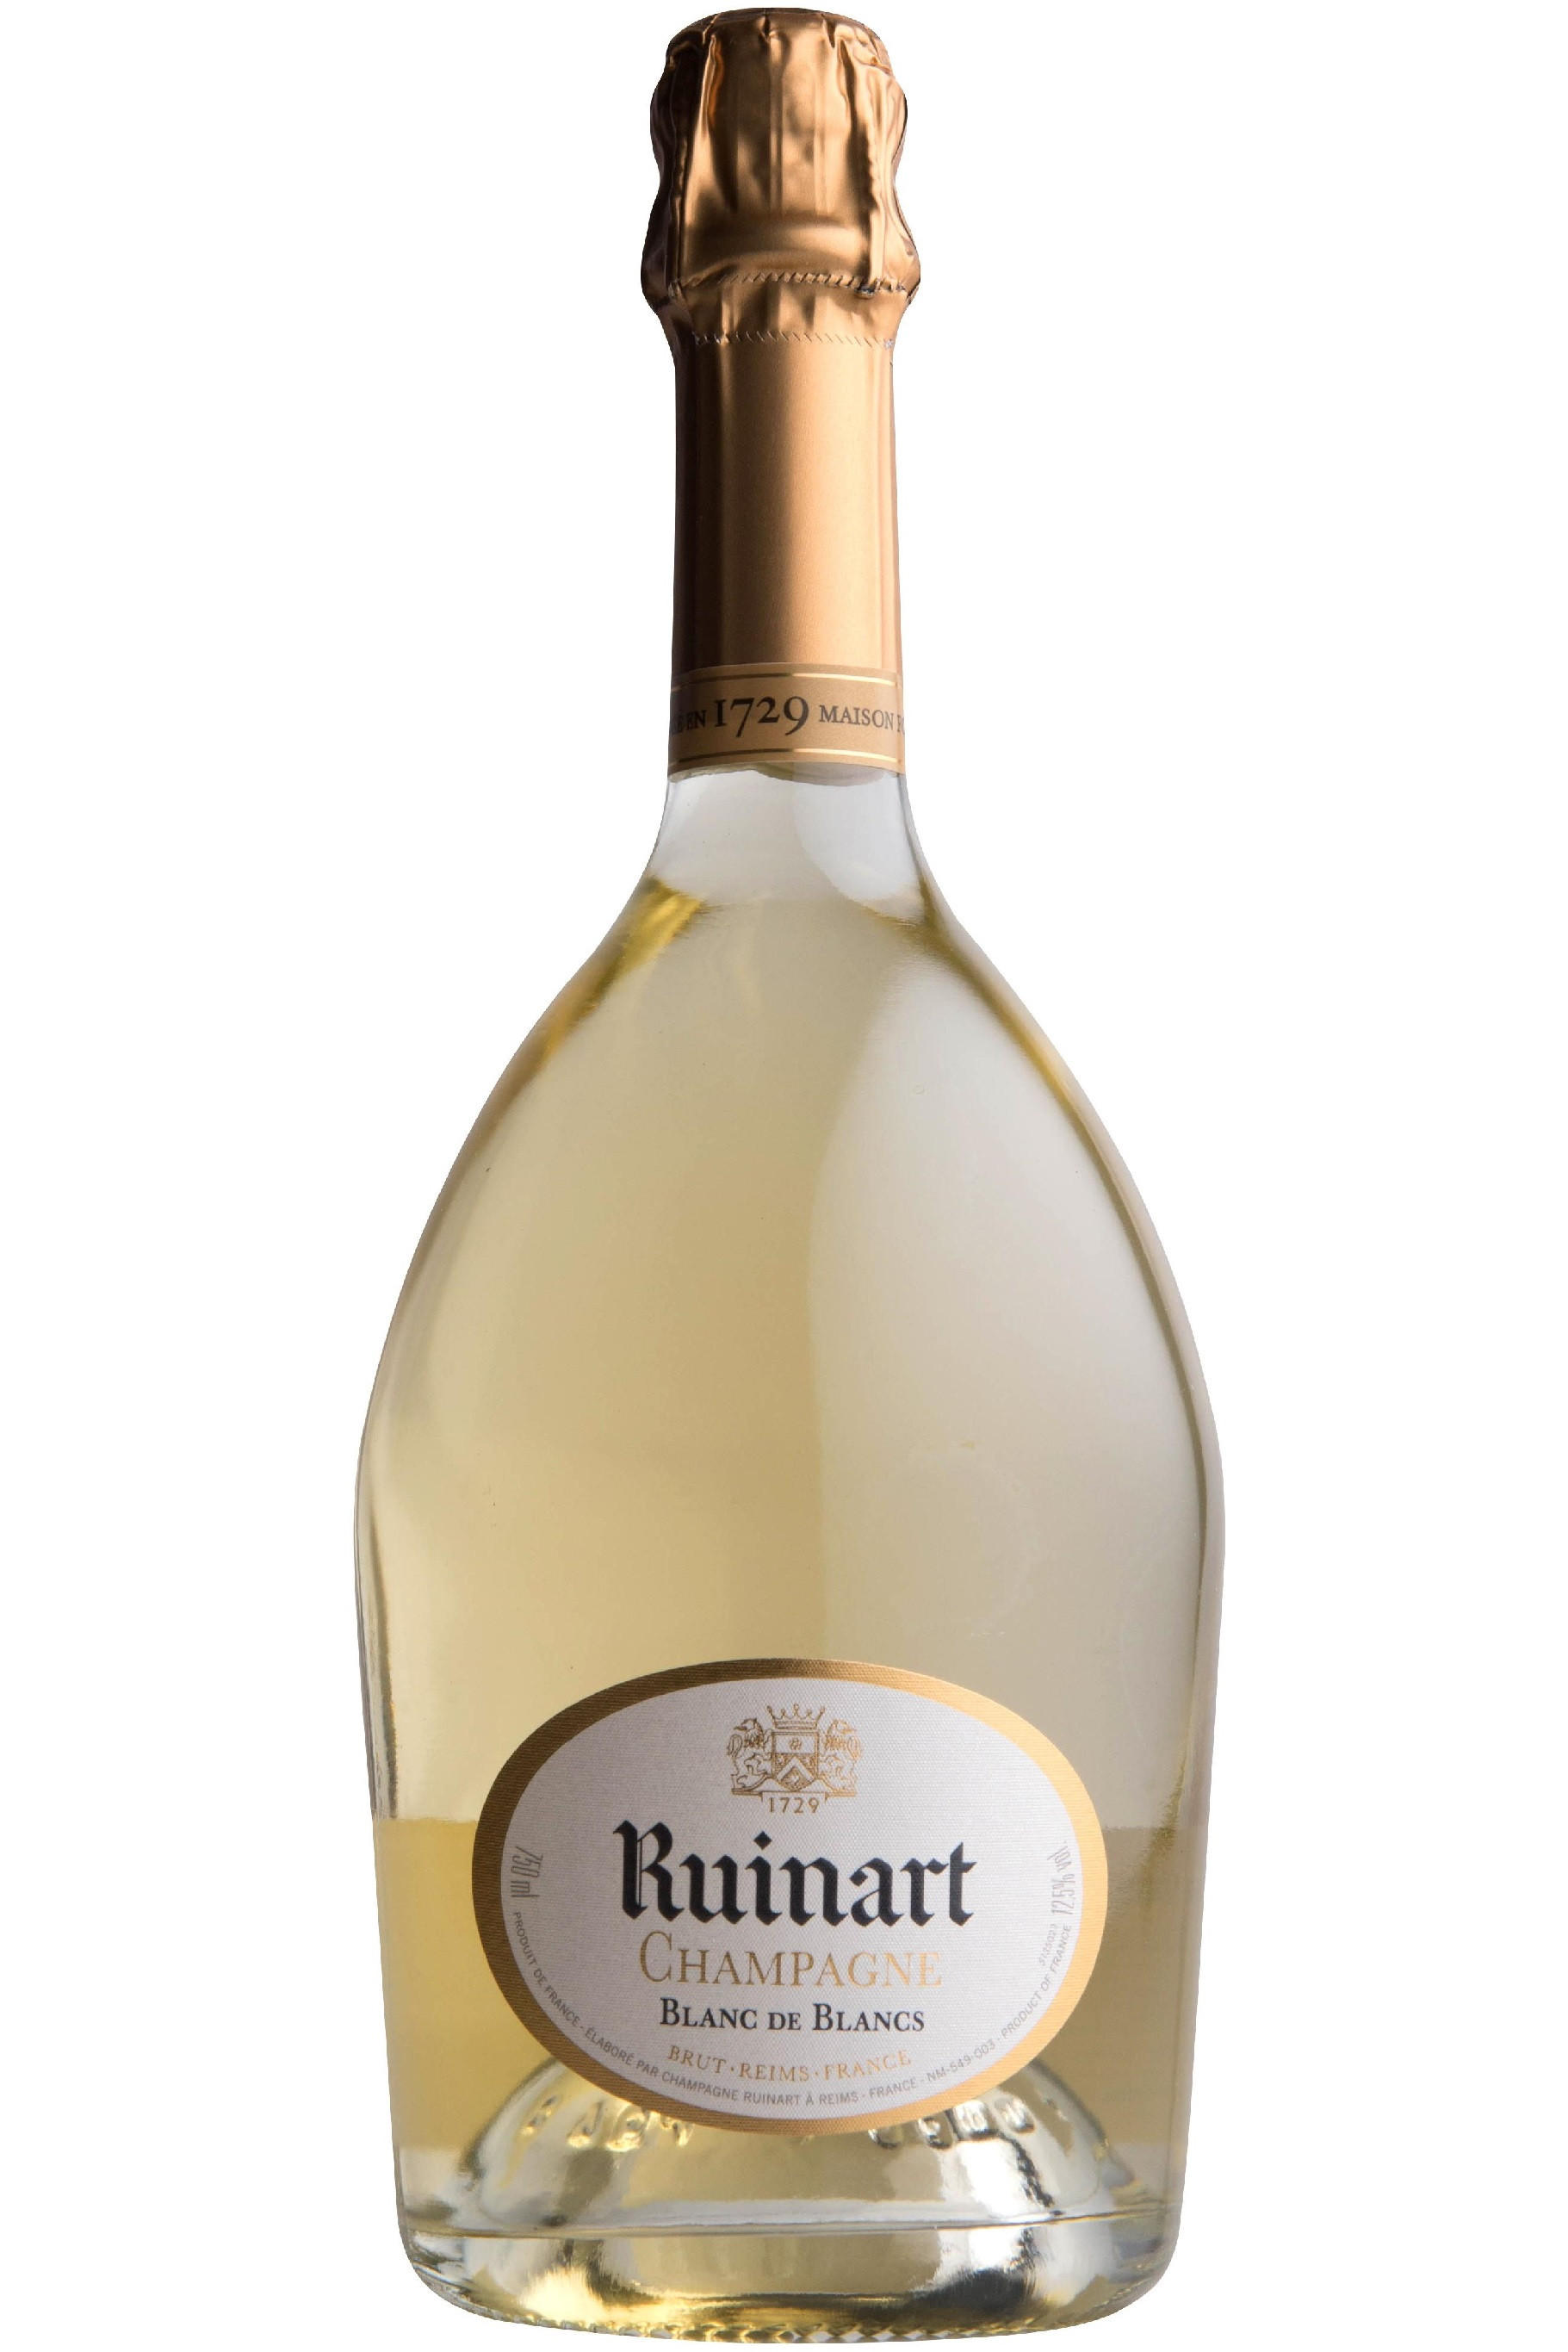 N.V. Ruinart Brut (R de Ruinart) Champagne